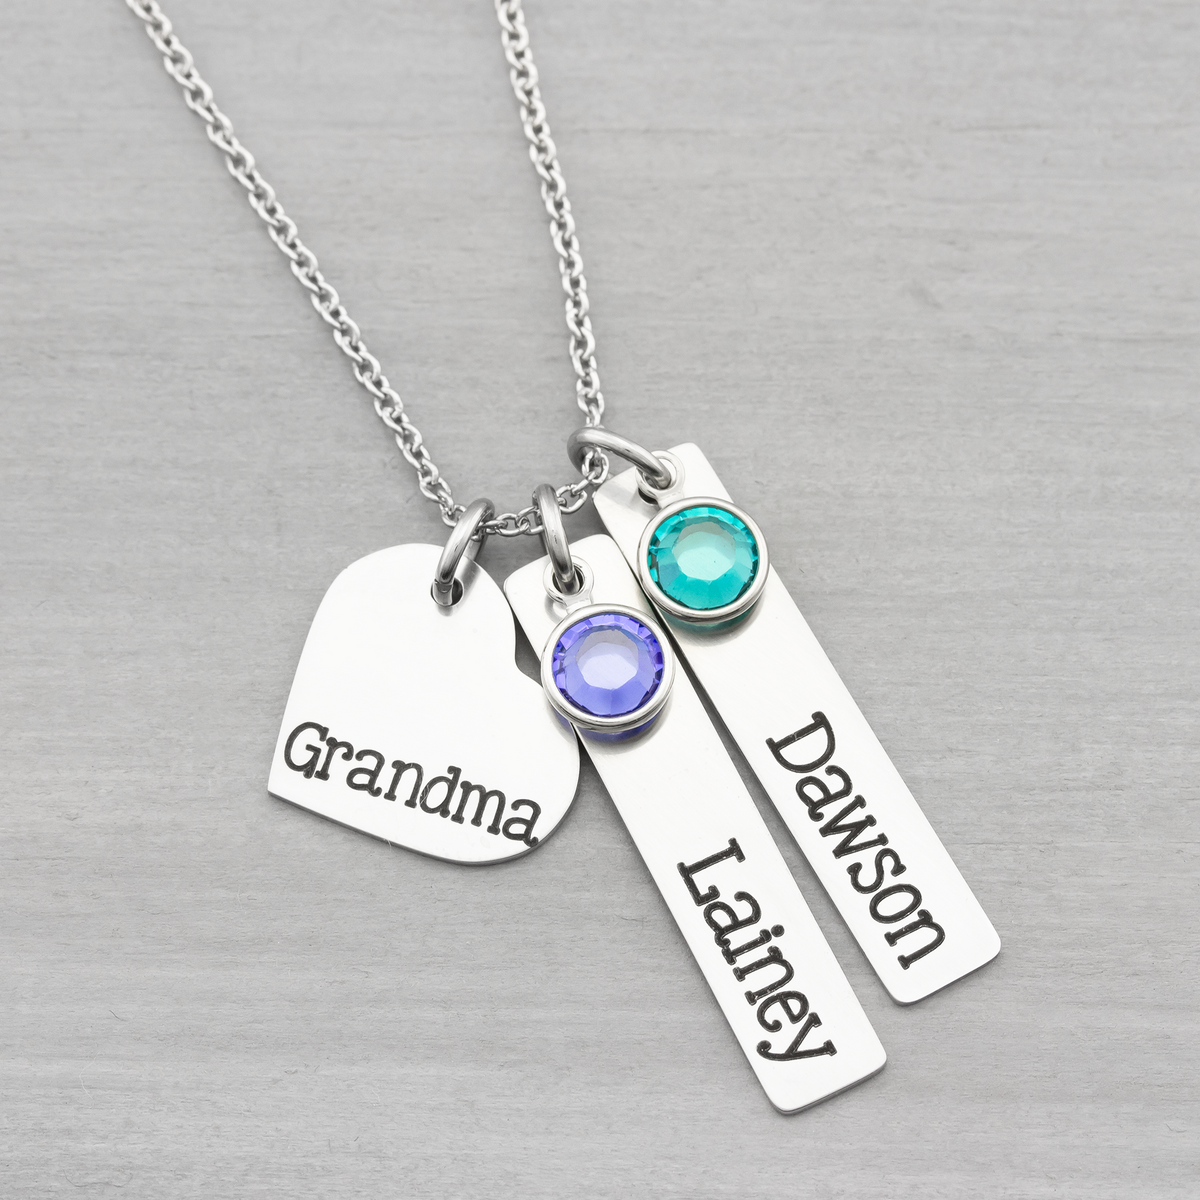 Custom Name Necklace Gift for Her - Heartfelt Tokens